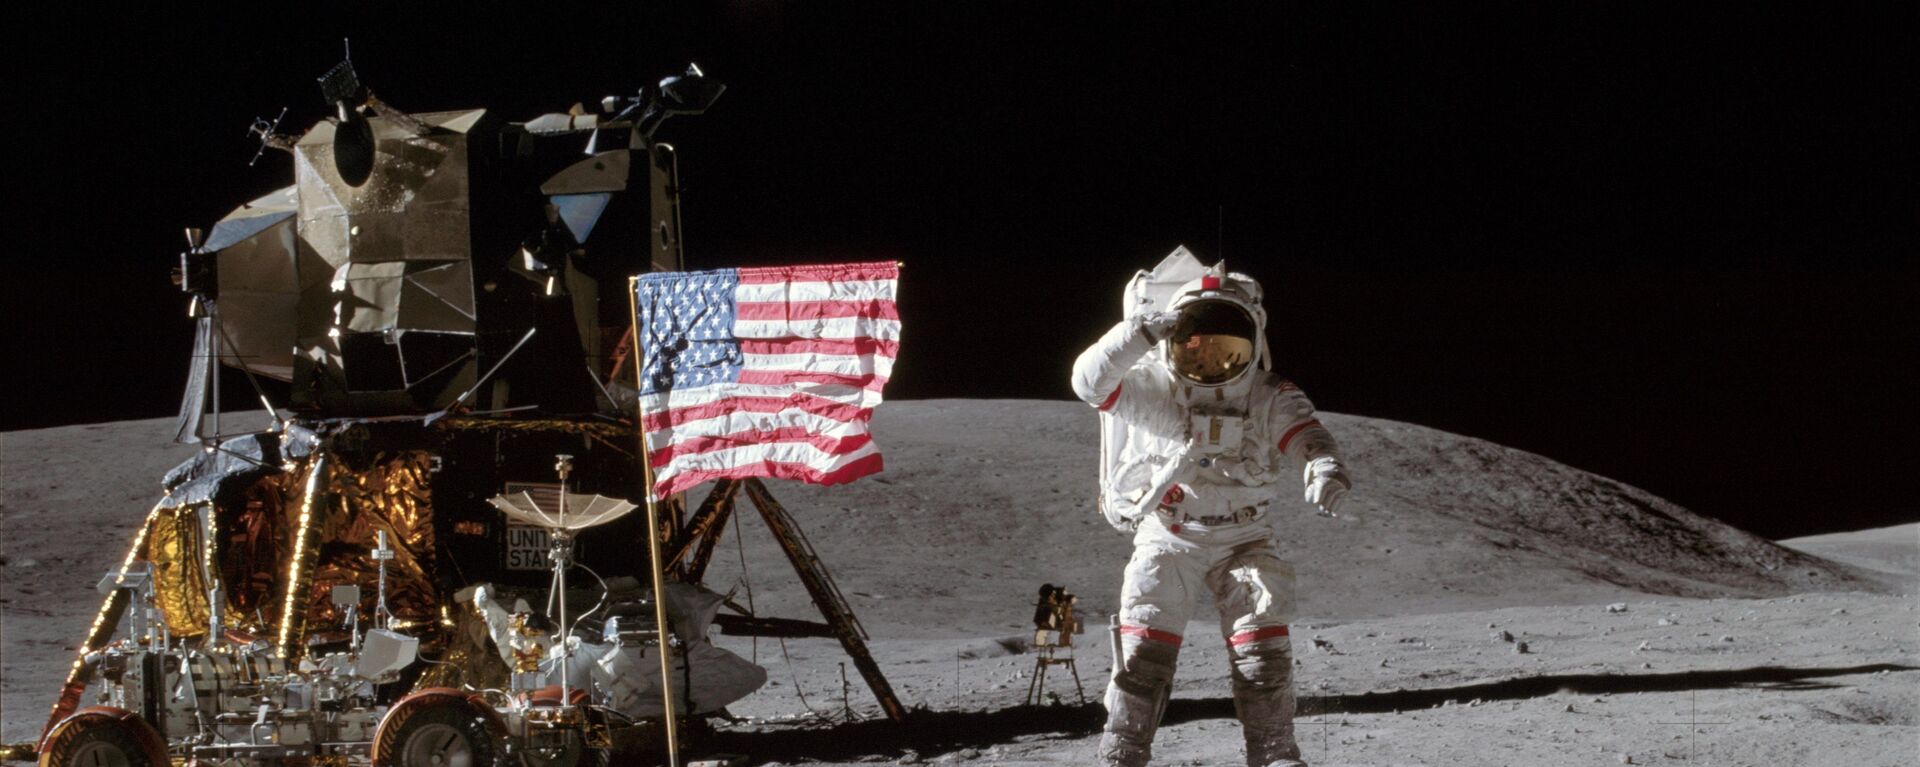 Američki astronaut Džon Jang, komandant lunarne misije „Apolo 16“, pozdravlja američku zastavu na površini Meseca. - Sputnik Srbija, 1920, 15.07.2019